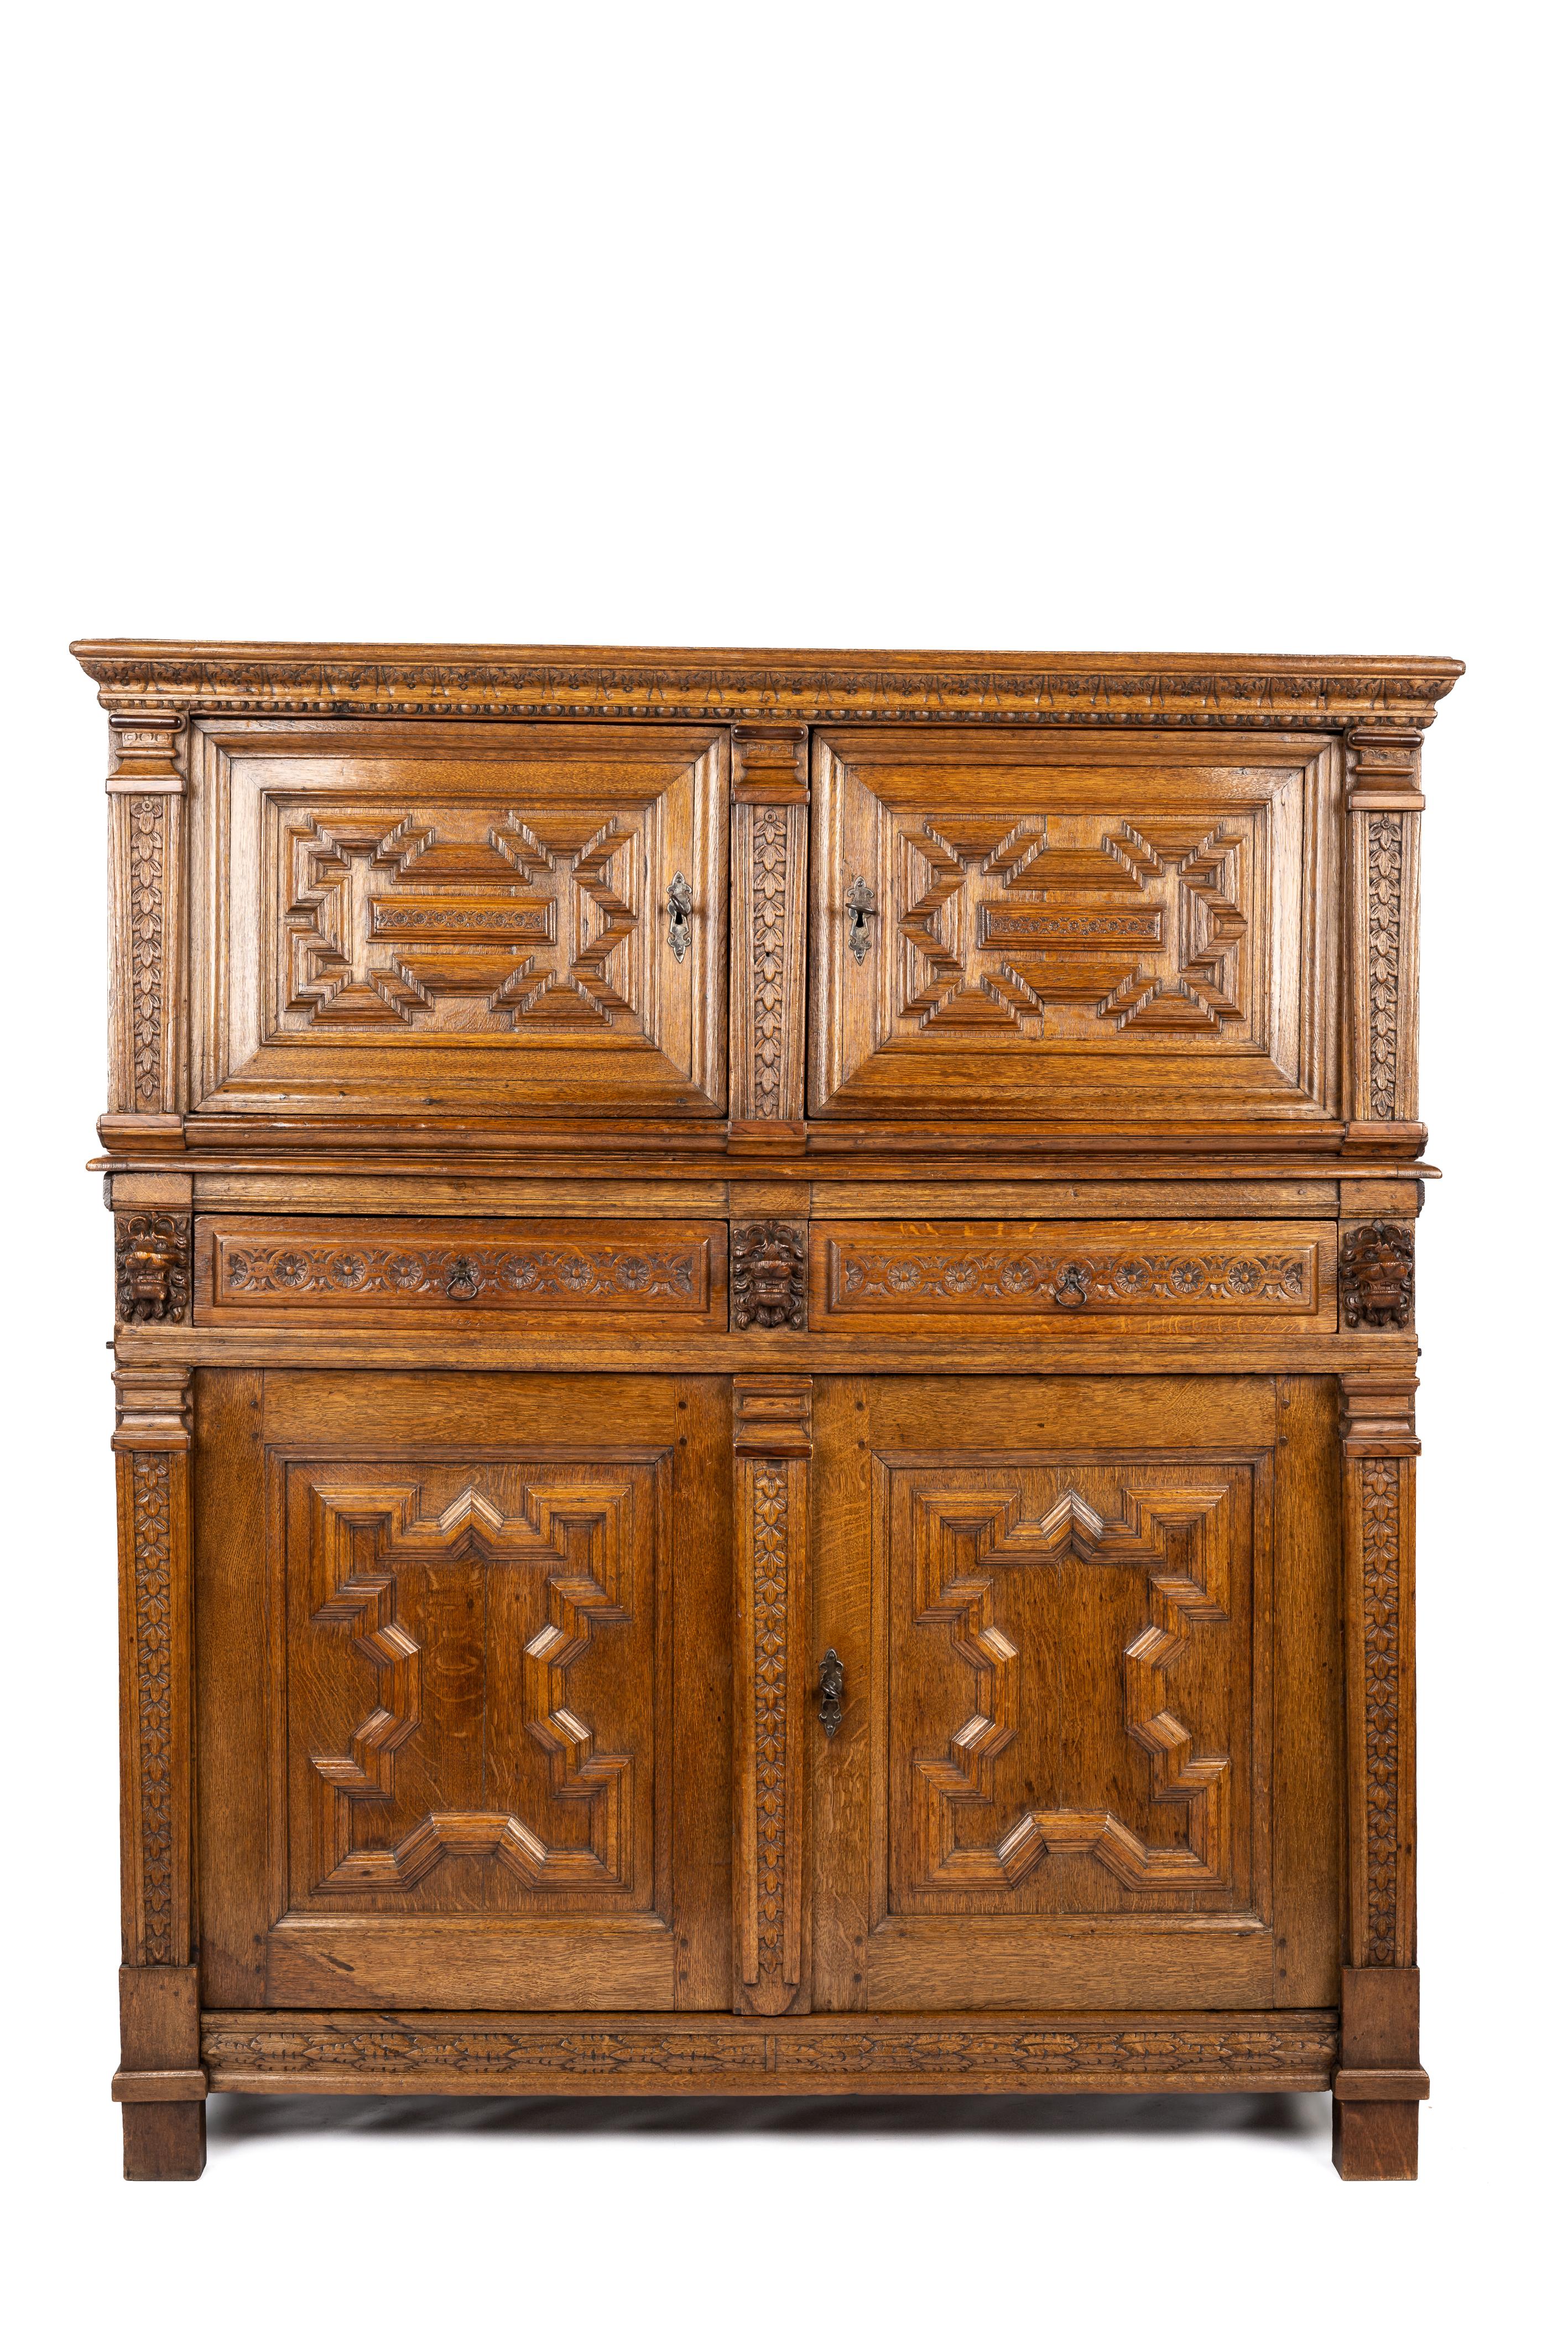 Cette fantastique armoire en chêne en deux parties du XVIIe siècle a été fabriquée à Anvers, en Flandre, vers 1680. Il se compose de deux pièces, un meuble inférieur et un meuble supérieur. L'armoire inférieure peut être utilisée sans l'armoire